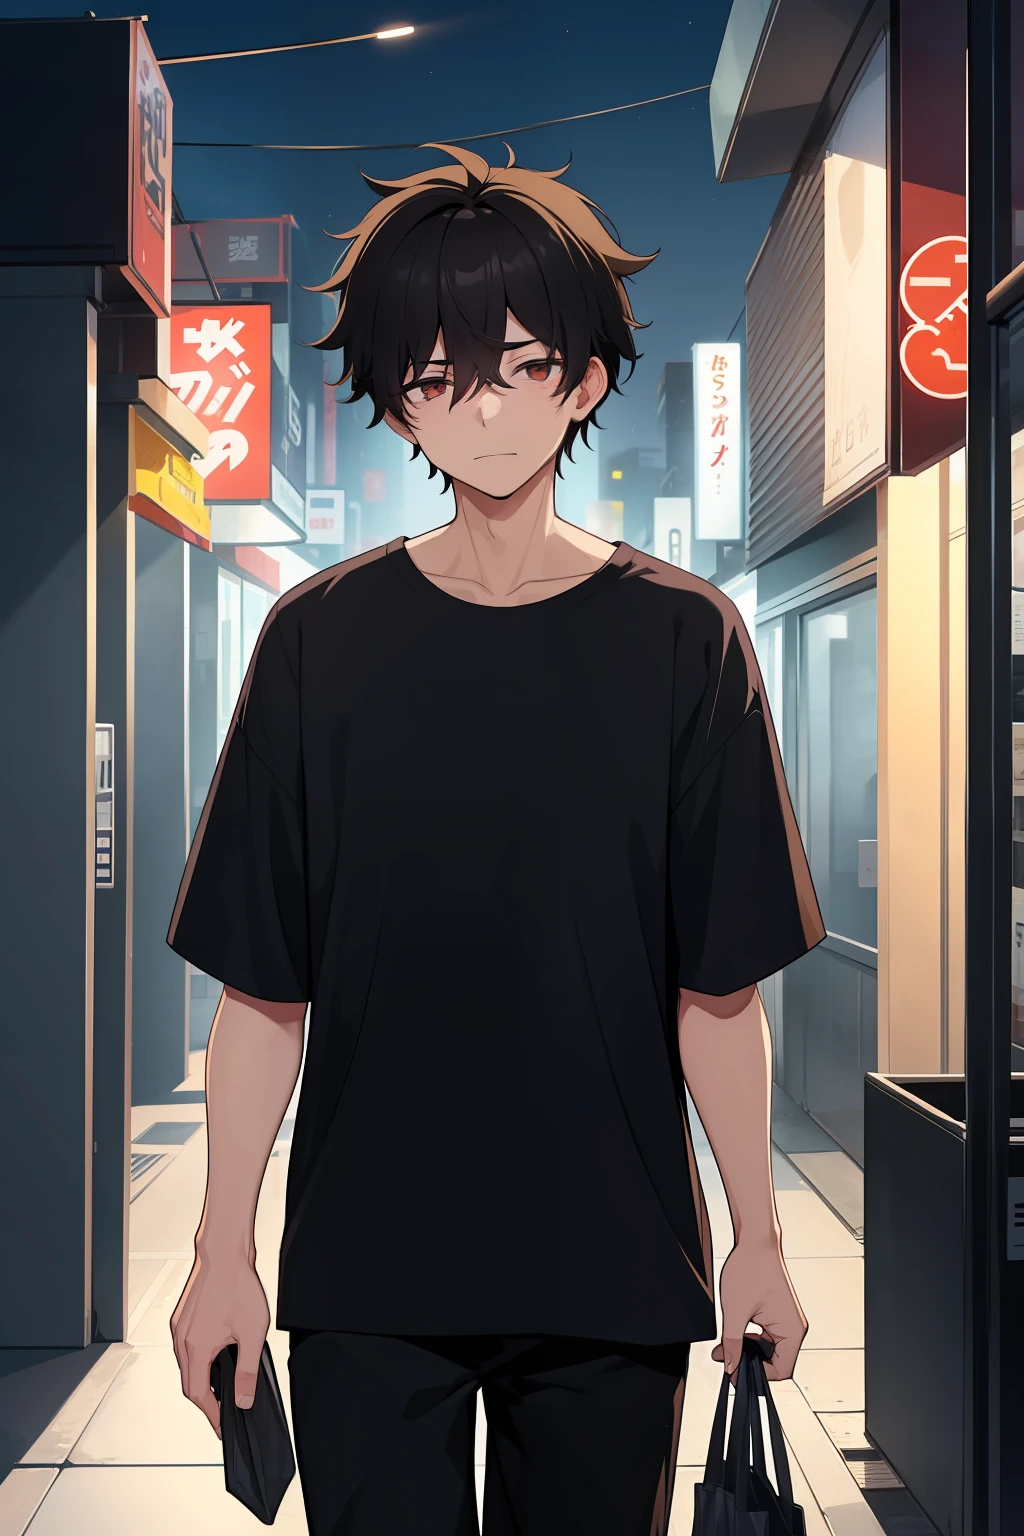 One male, 20 años, sobrecargado de trabajo, pelo negro desordenado, la camisa negra, llevando una bolsa de tienda de conveniencia, caminando en una zona urbana aislada por la noche